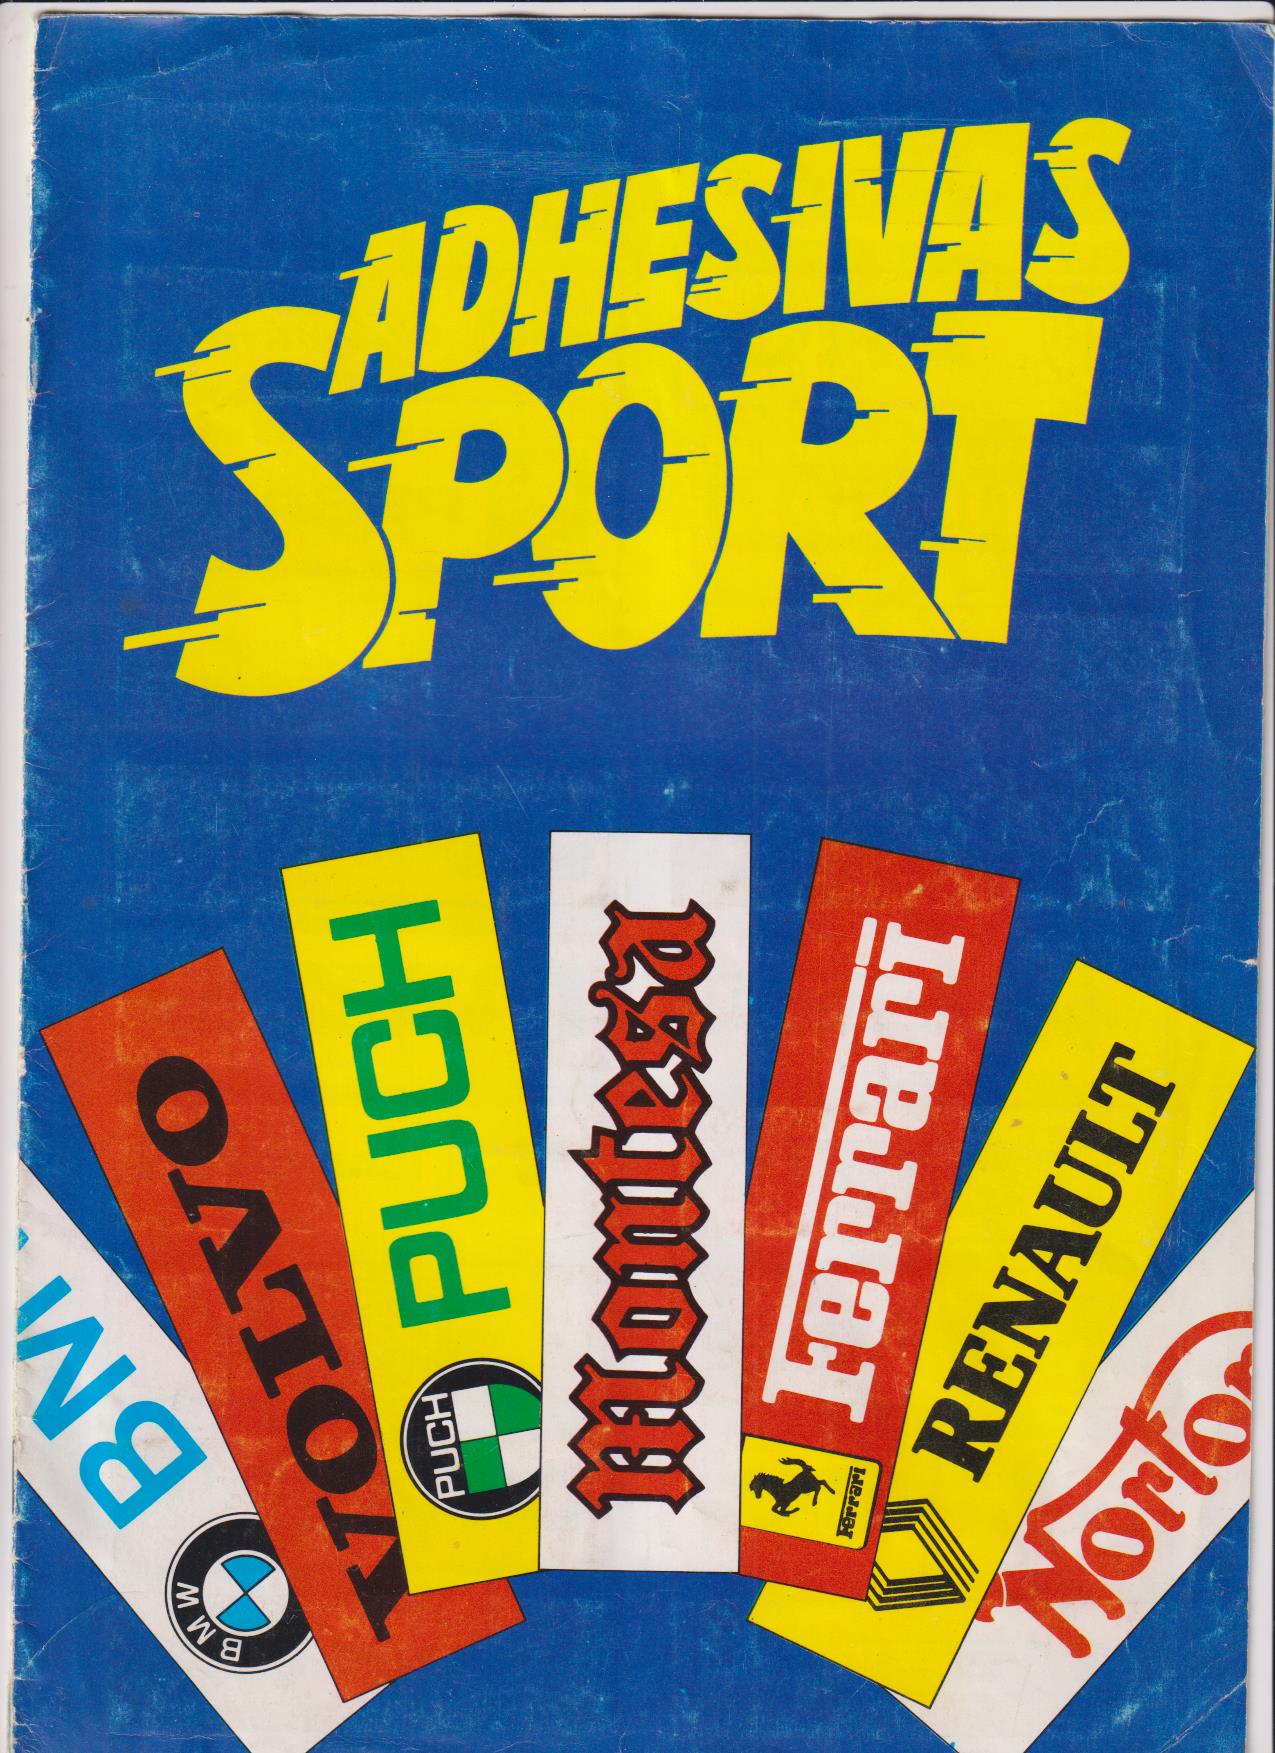 Adhesivas Sport. Tiene 95 Adhesivas, A falta de 24. Los Escudos de Futbol completos